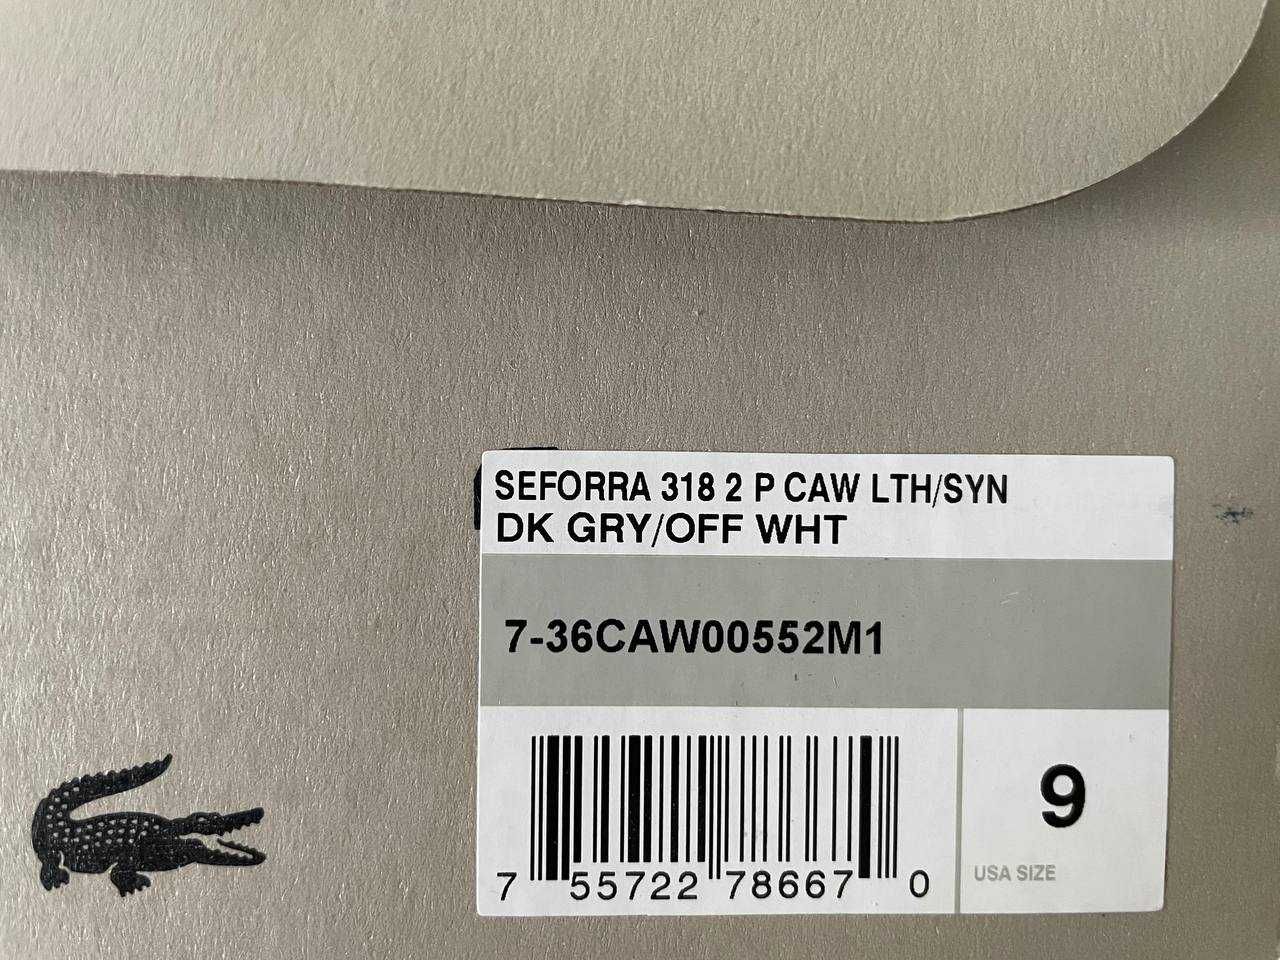 кроссовки Lacoste Seforra 318 2 P CAW, оригинал 40,5р  7-36CAW00552M1